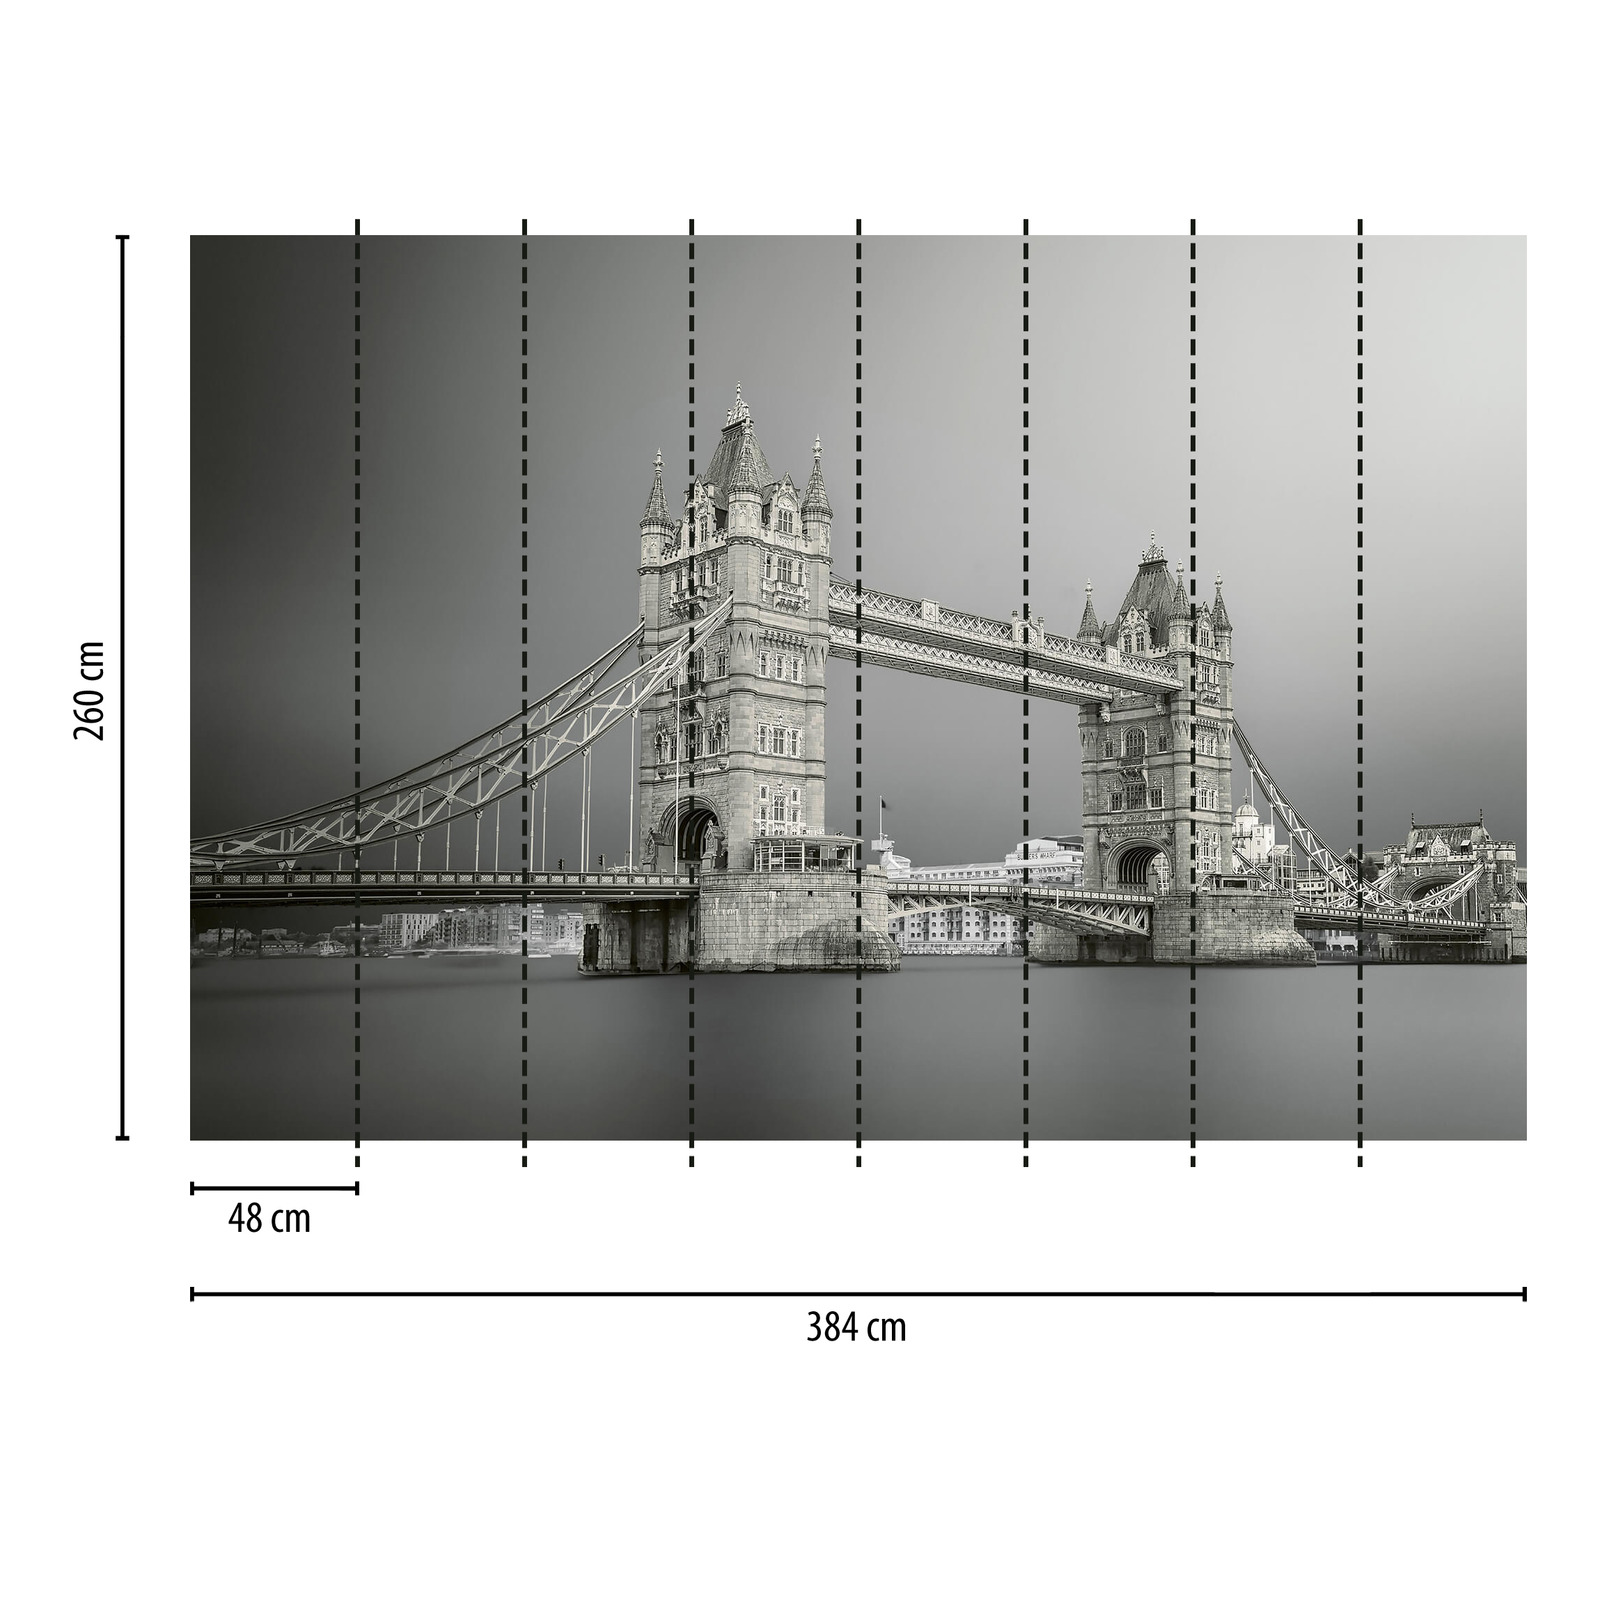             Papier peint Tower Bridge London - gris, blanc, noir
        